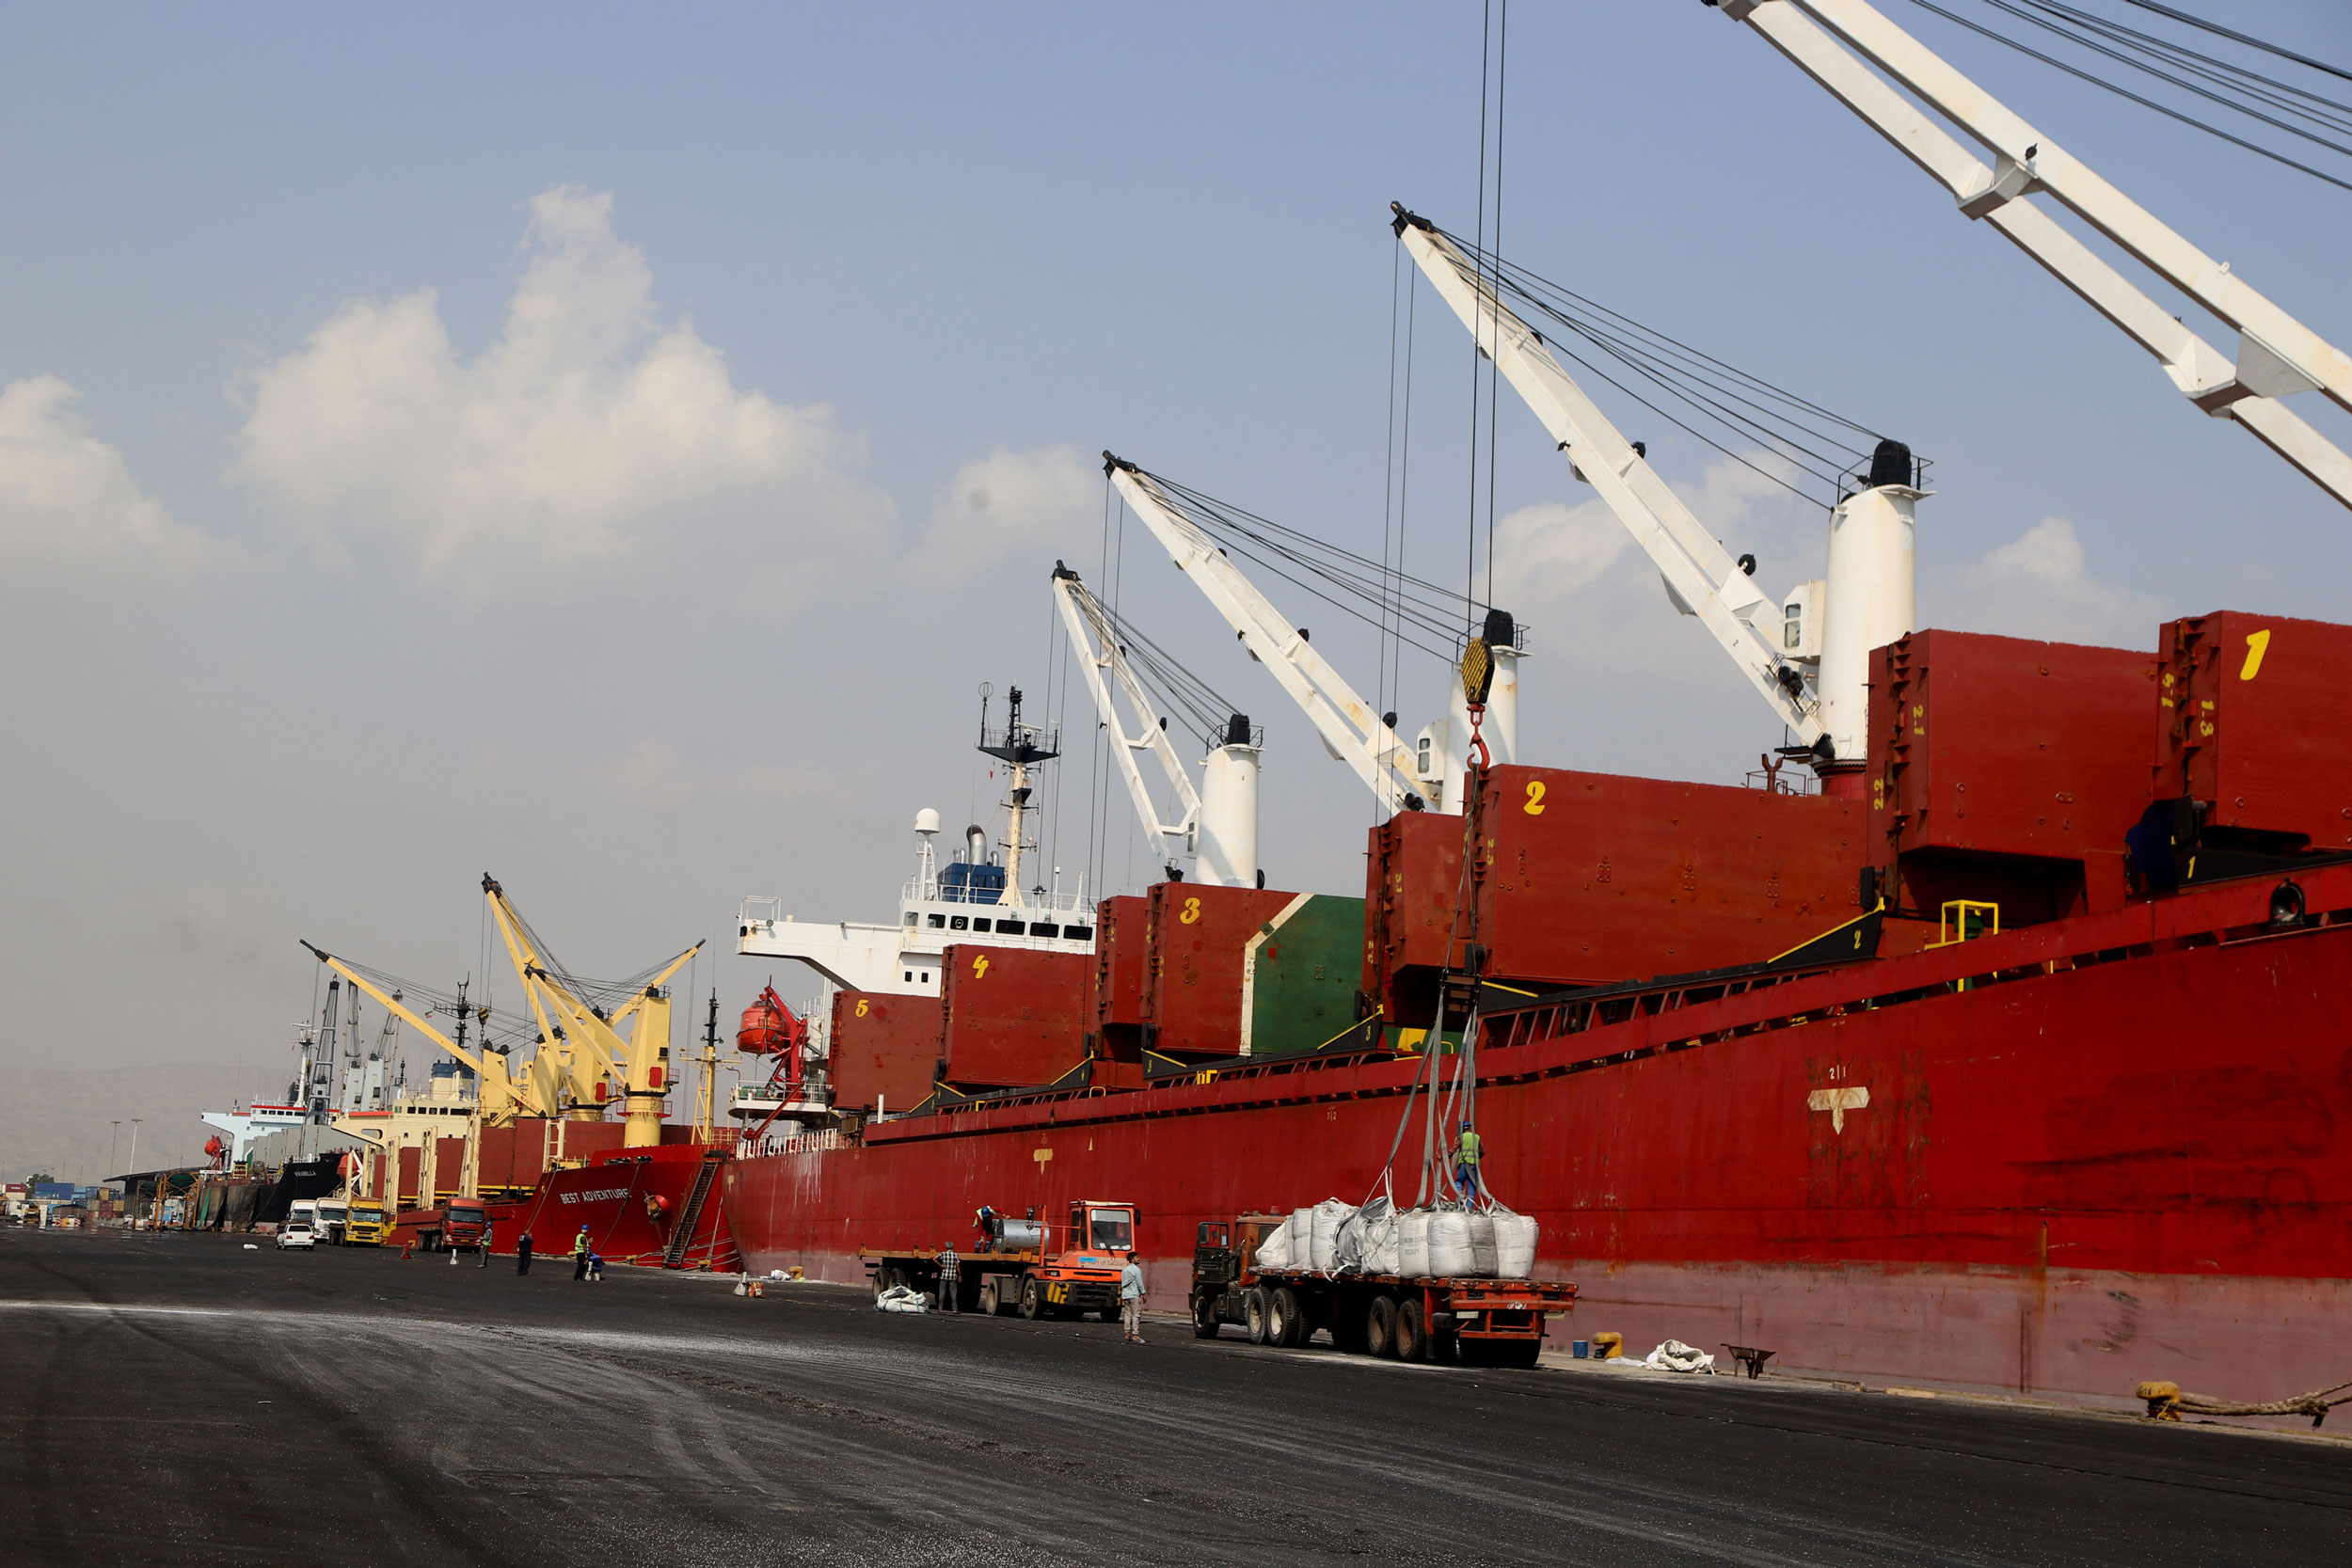 ثبت رکورد بارگیری ۸۱ هزار تن سنگ آهن صادراتی در بندر شهید رجایی/ ۵ فروند کشتی کالای اساسی در انتظار پهلودهی در این بندر